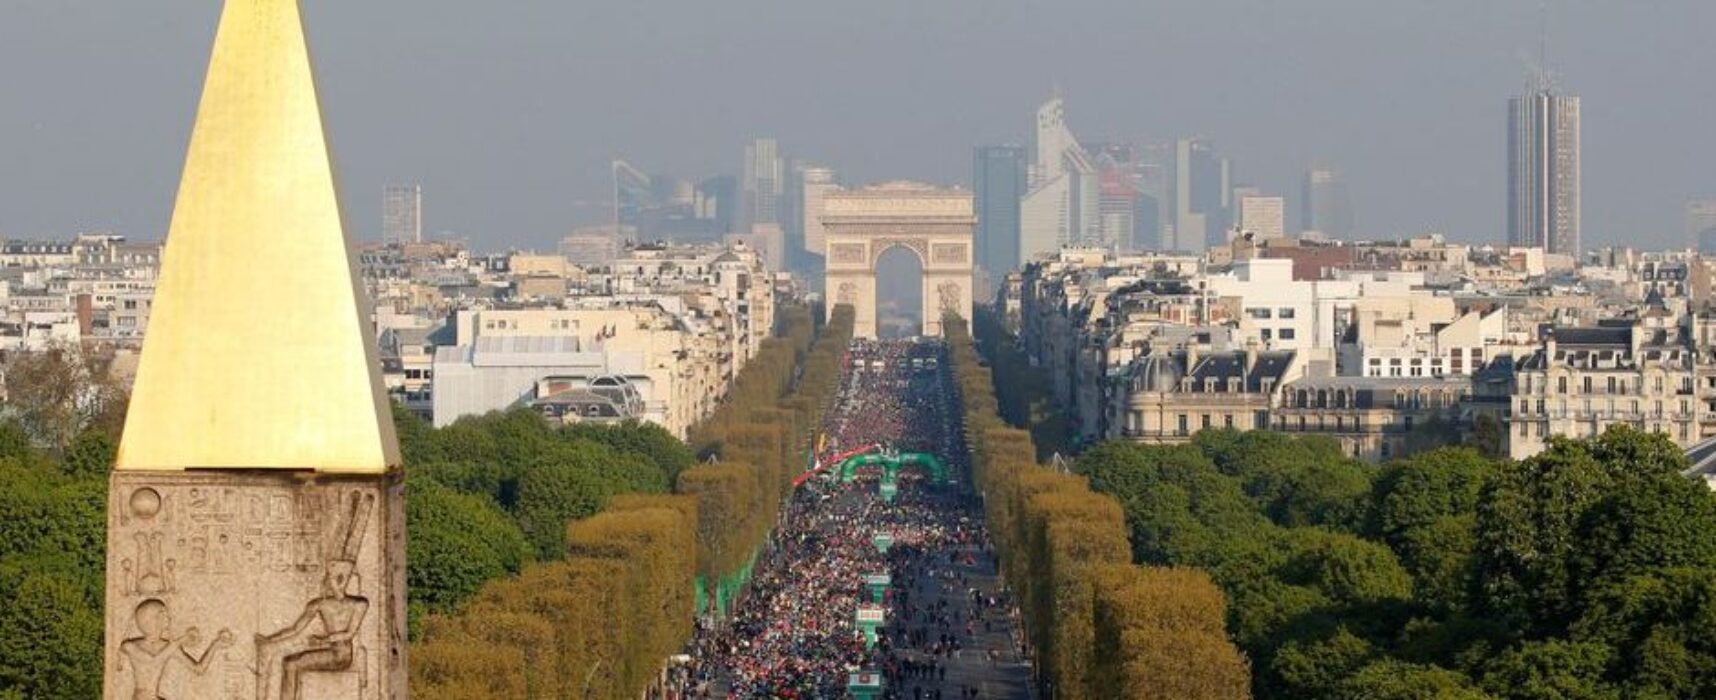 Maratona de Paris de 2021 é adiada para outubro, devido à covid-19